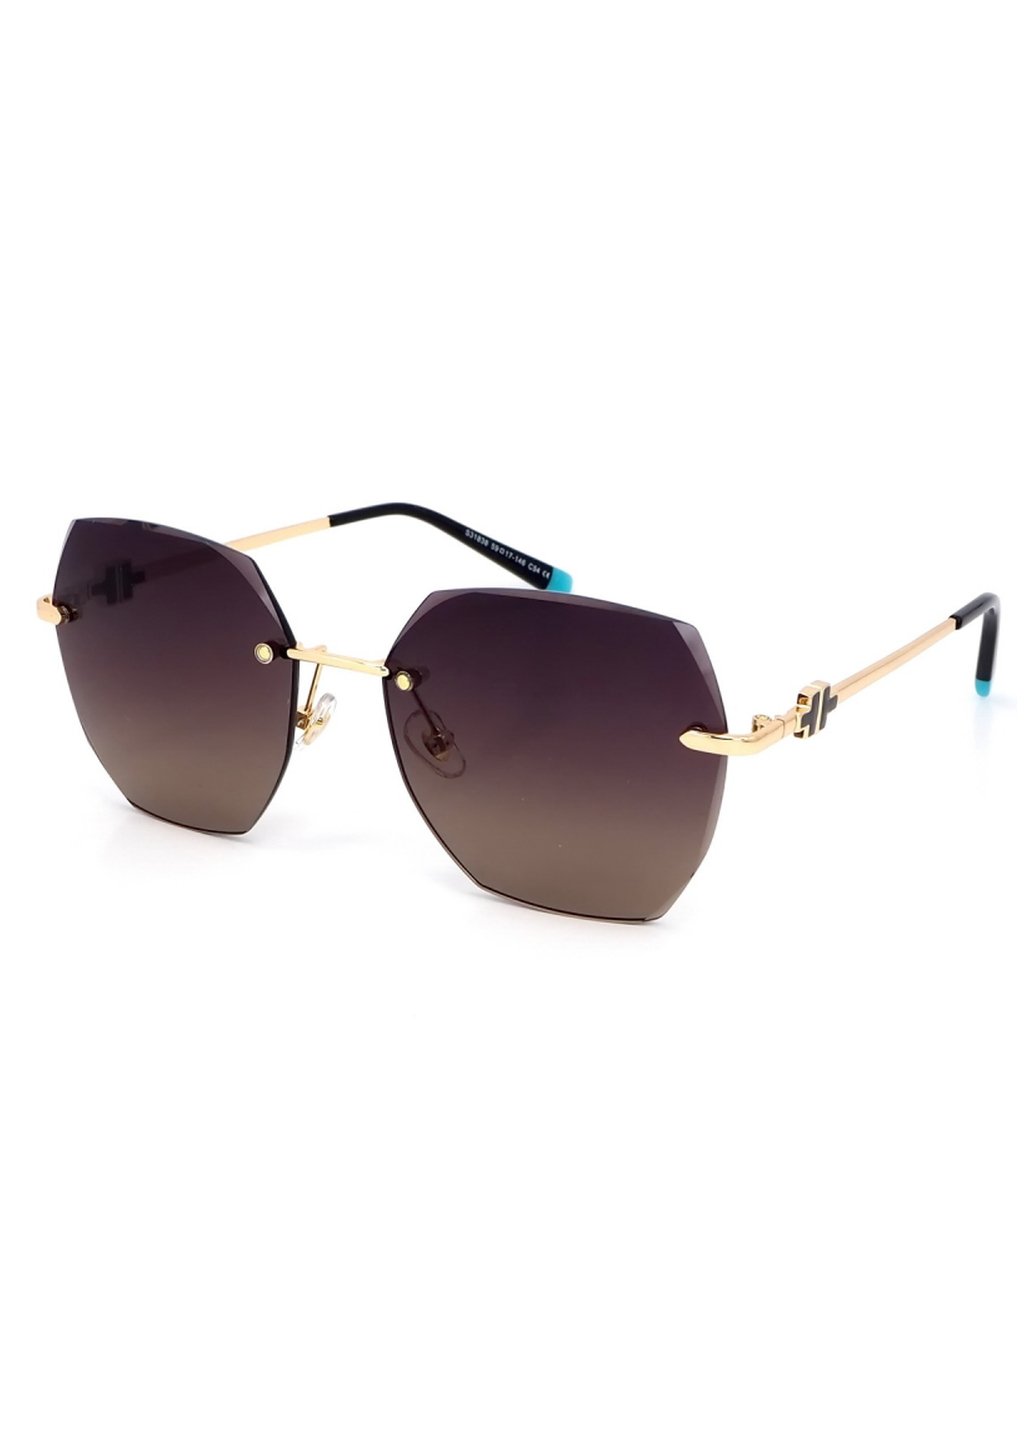 Купить Женские солнцезащитные очки Merlini с поляризацией S31838 117104 - Золотистый в интернет-магазине